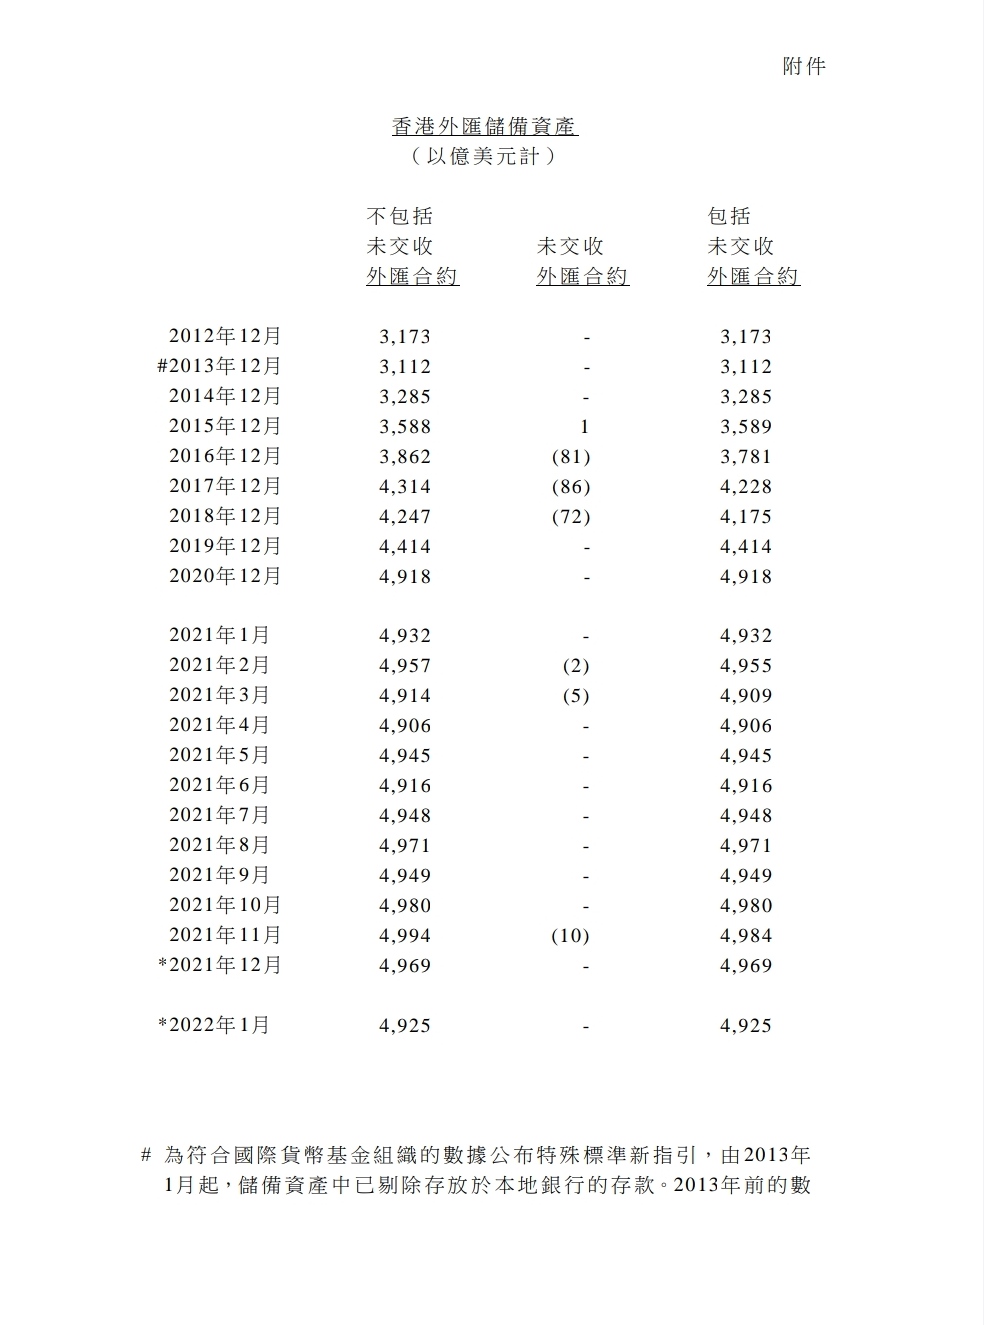 香港2022年1月底的官方外匯儲備資產為4,925億美元